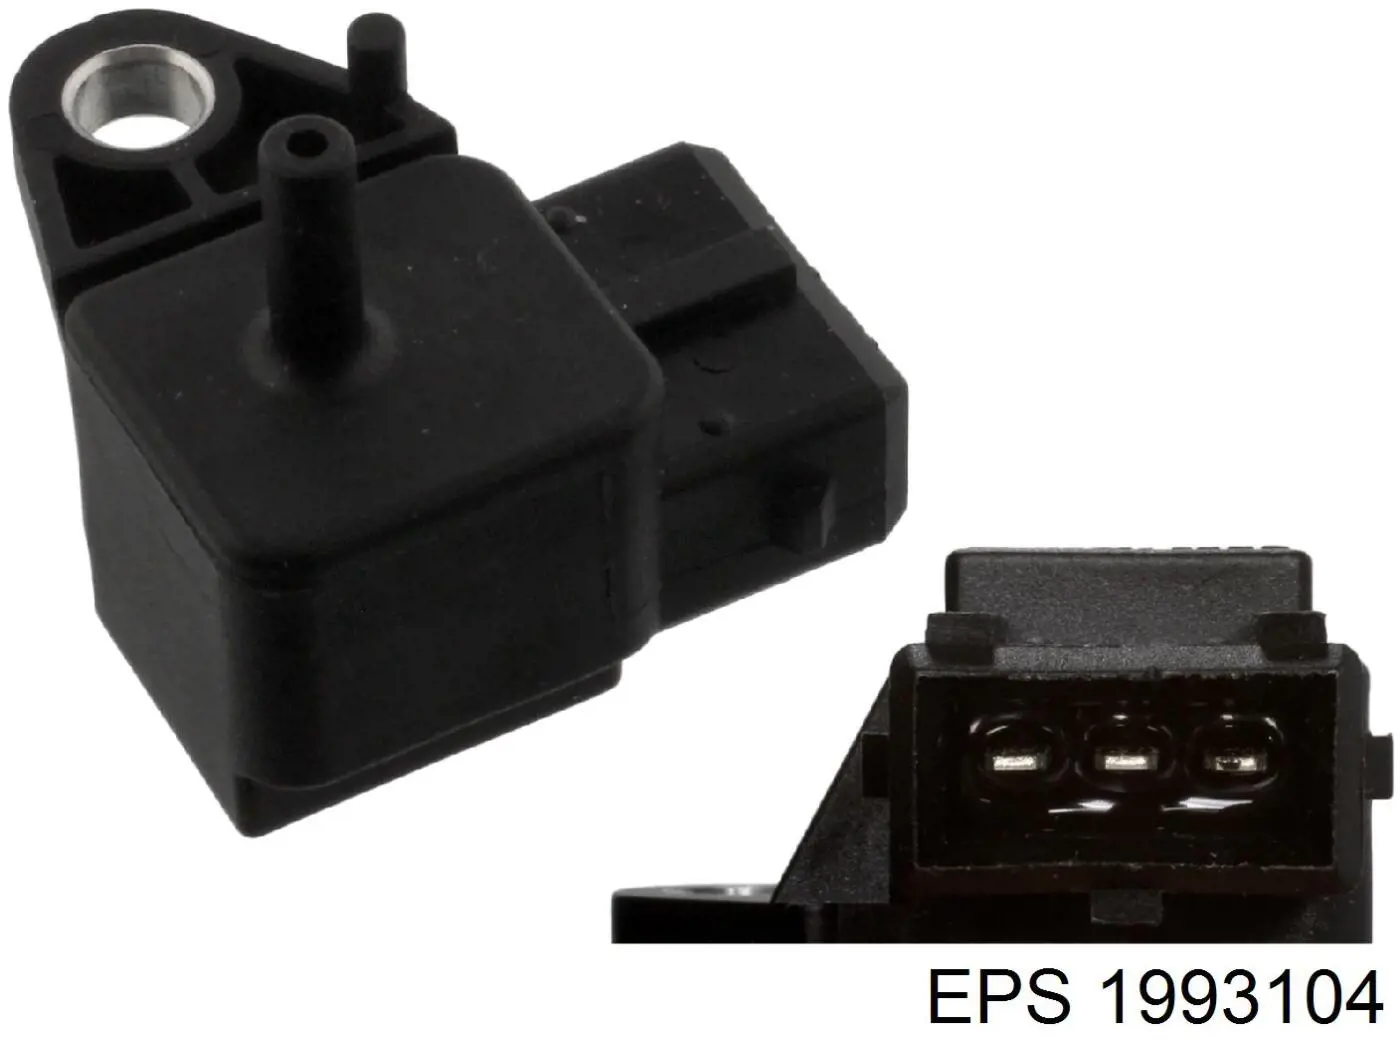 1993104 EPS sensor de presion del colector de admision